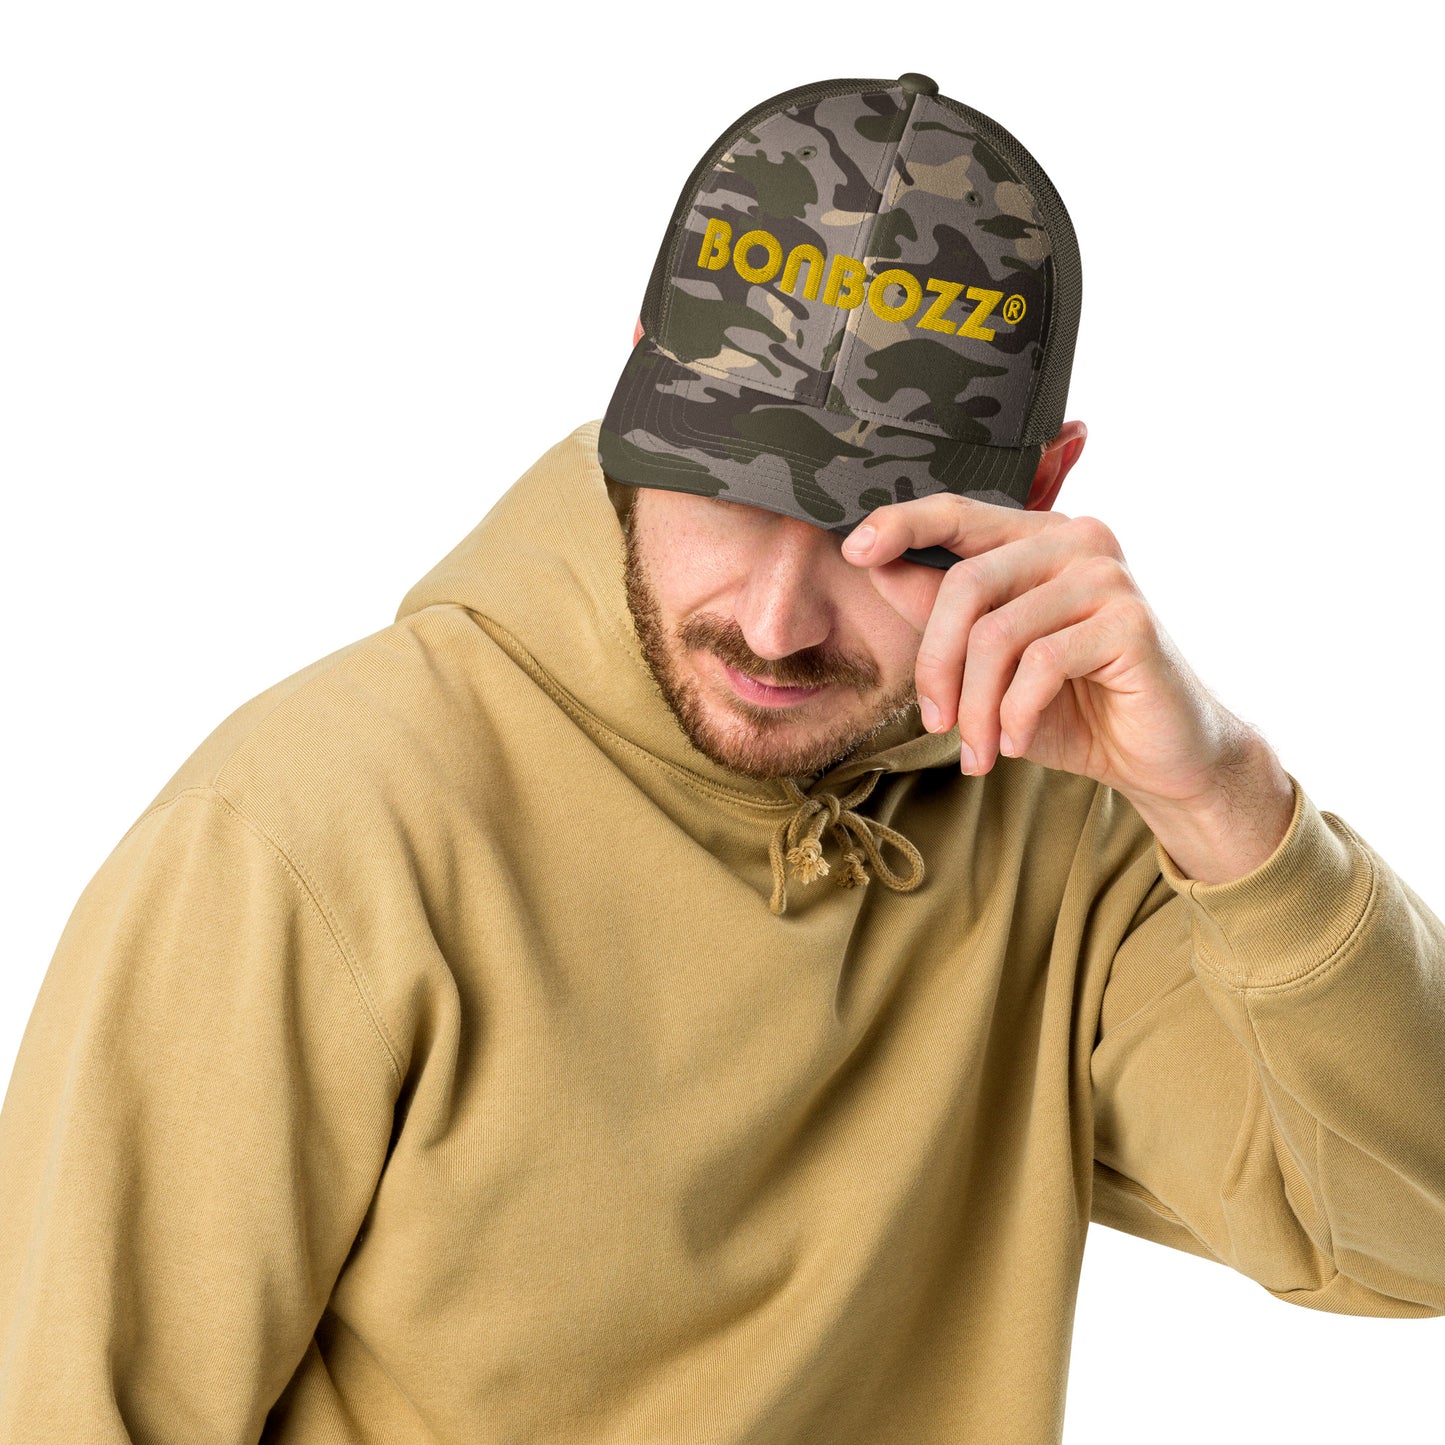 Trucker-Hat im Camouflage-Look